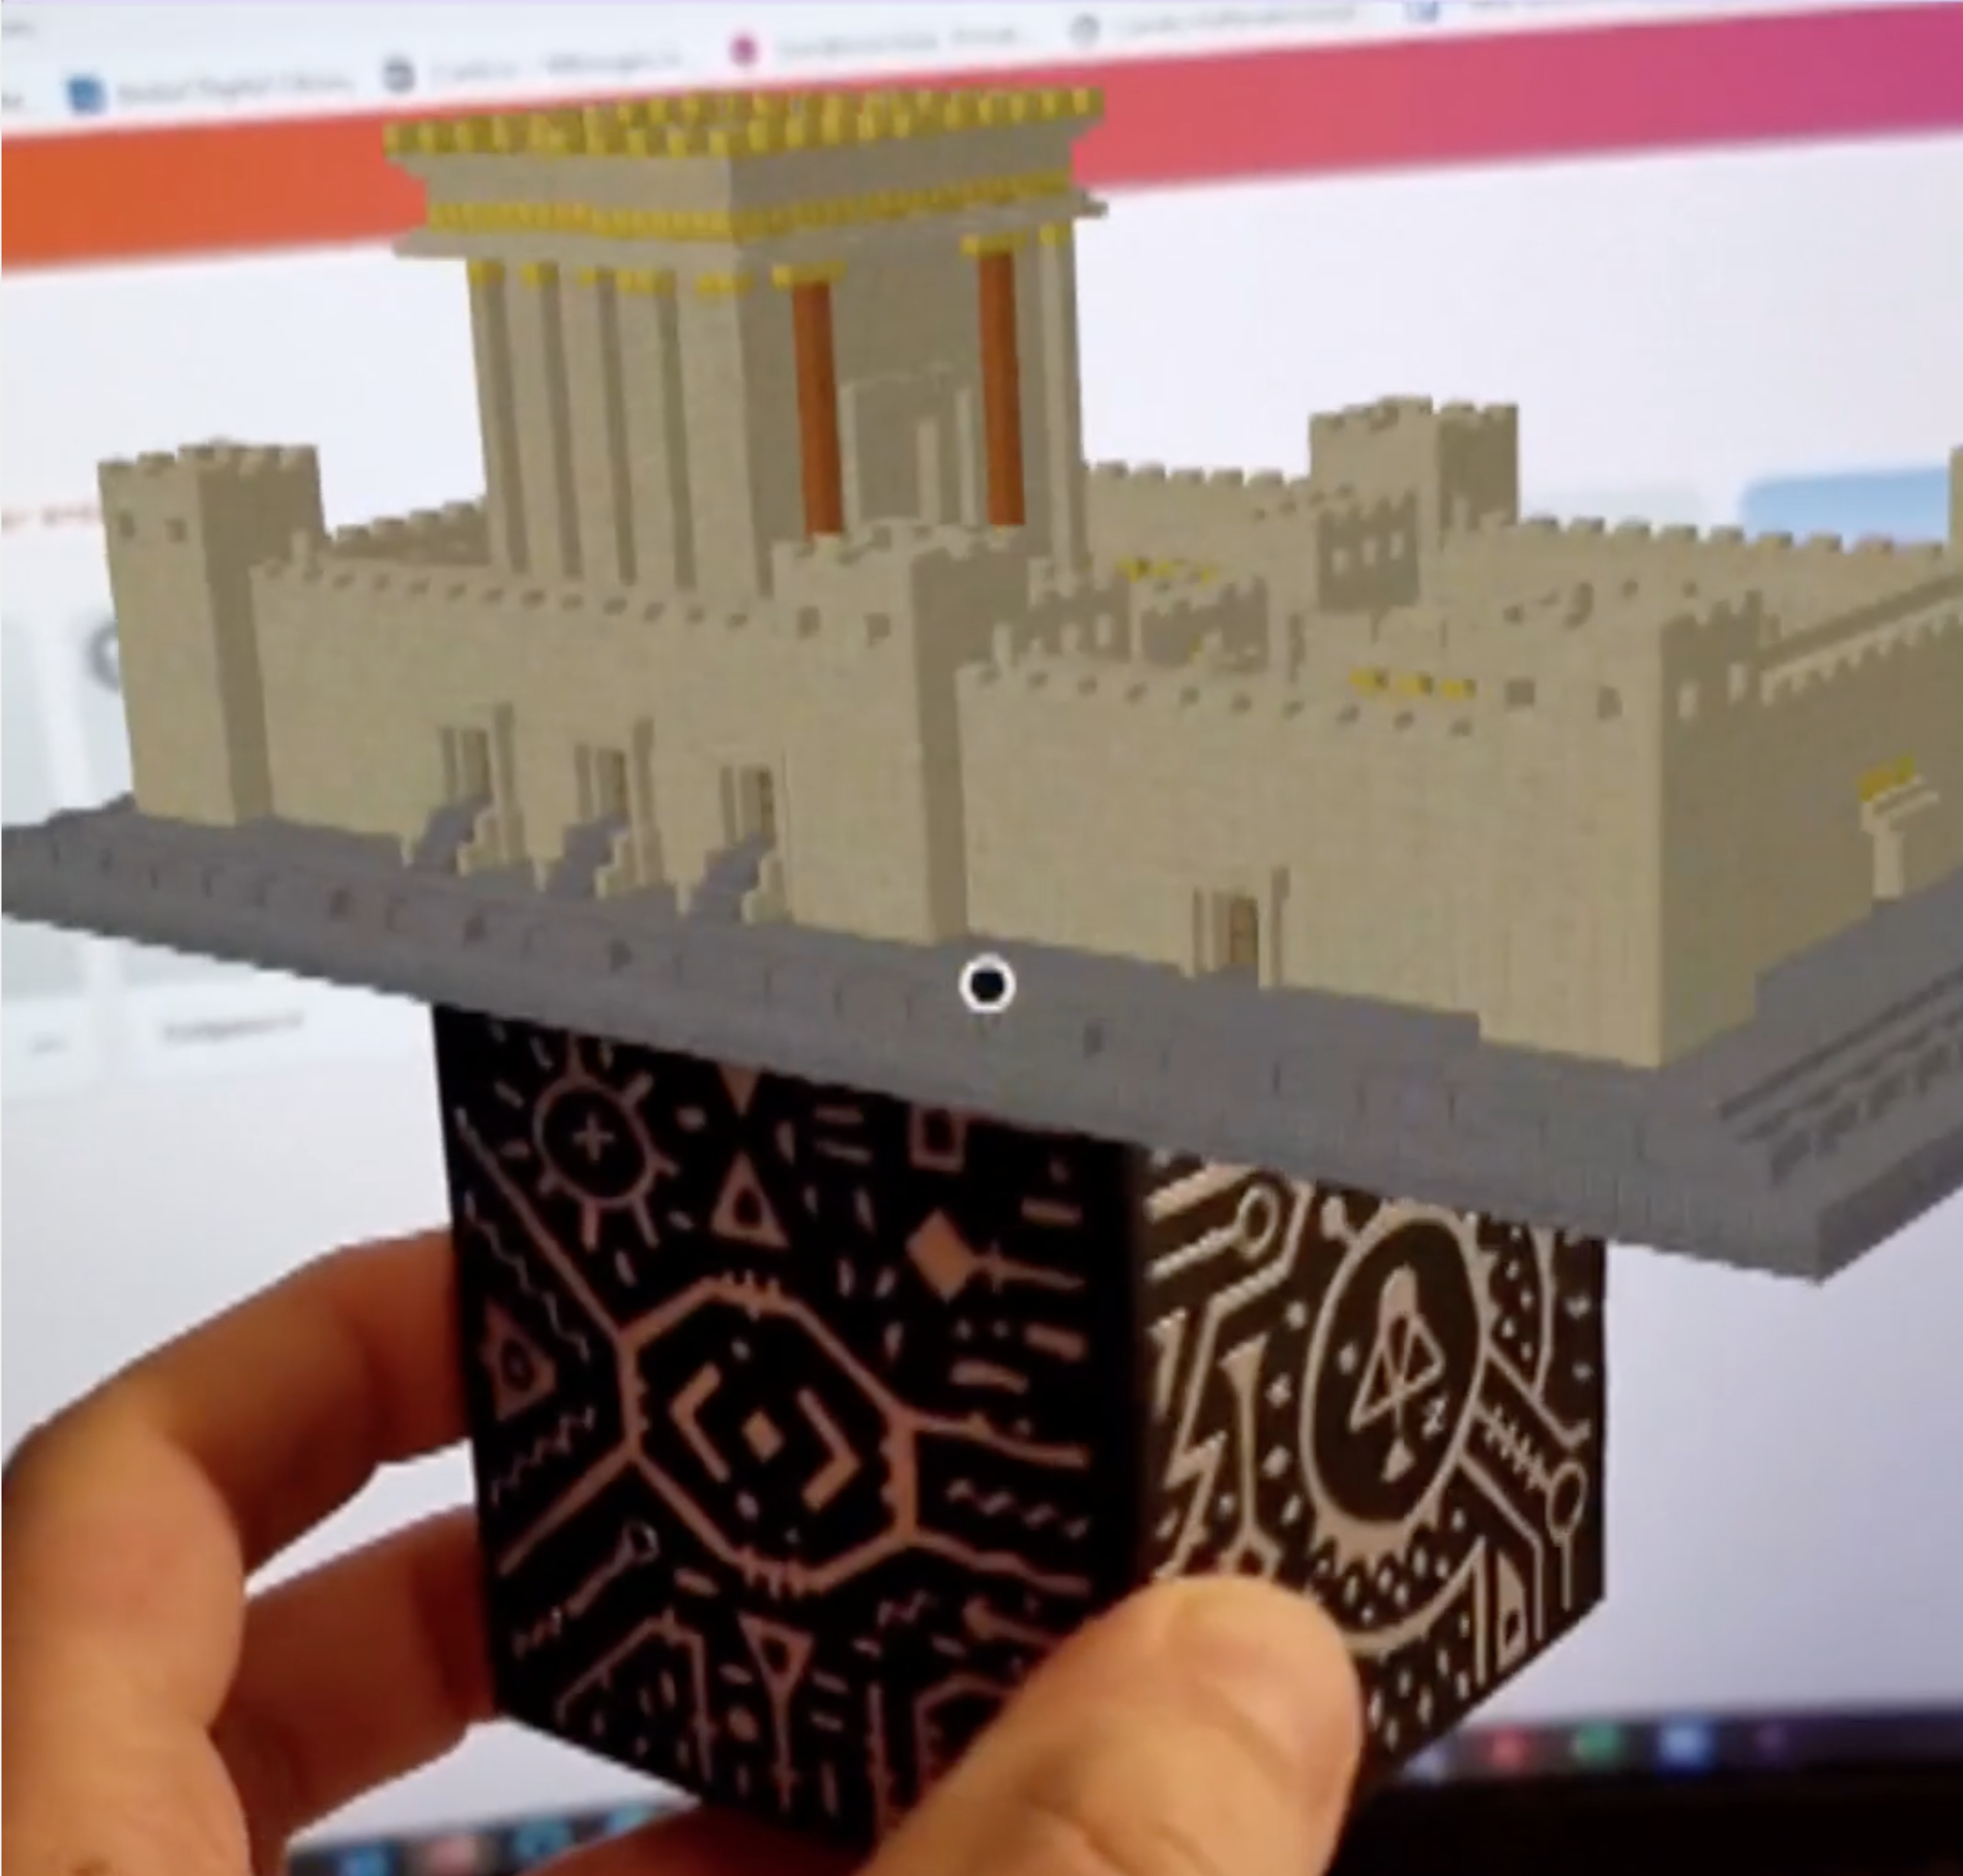 Tobias Schneider: Der Tempel des Herodes zum Anfassen – Minecraftbauwerke zu Hologrammen umwandeln